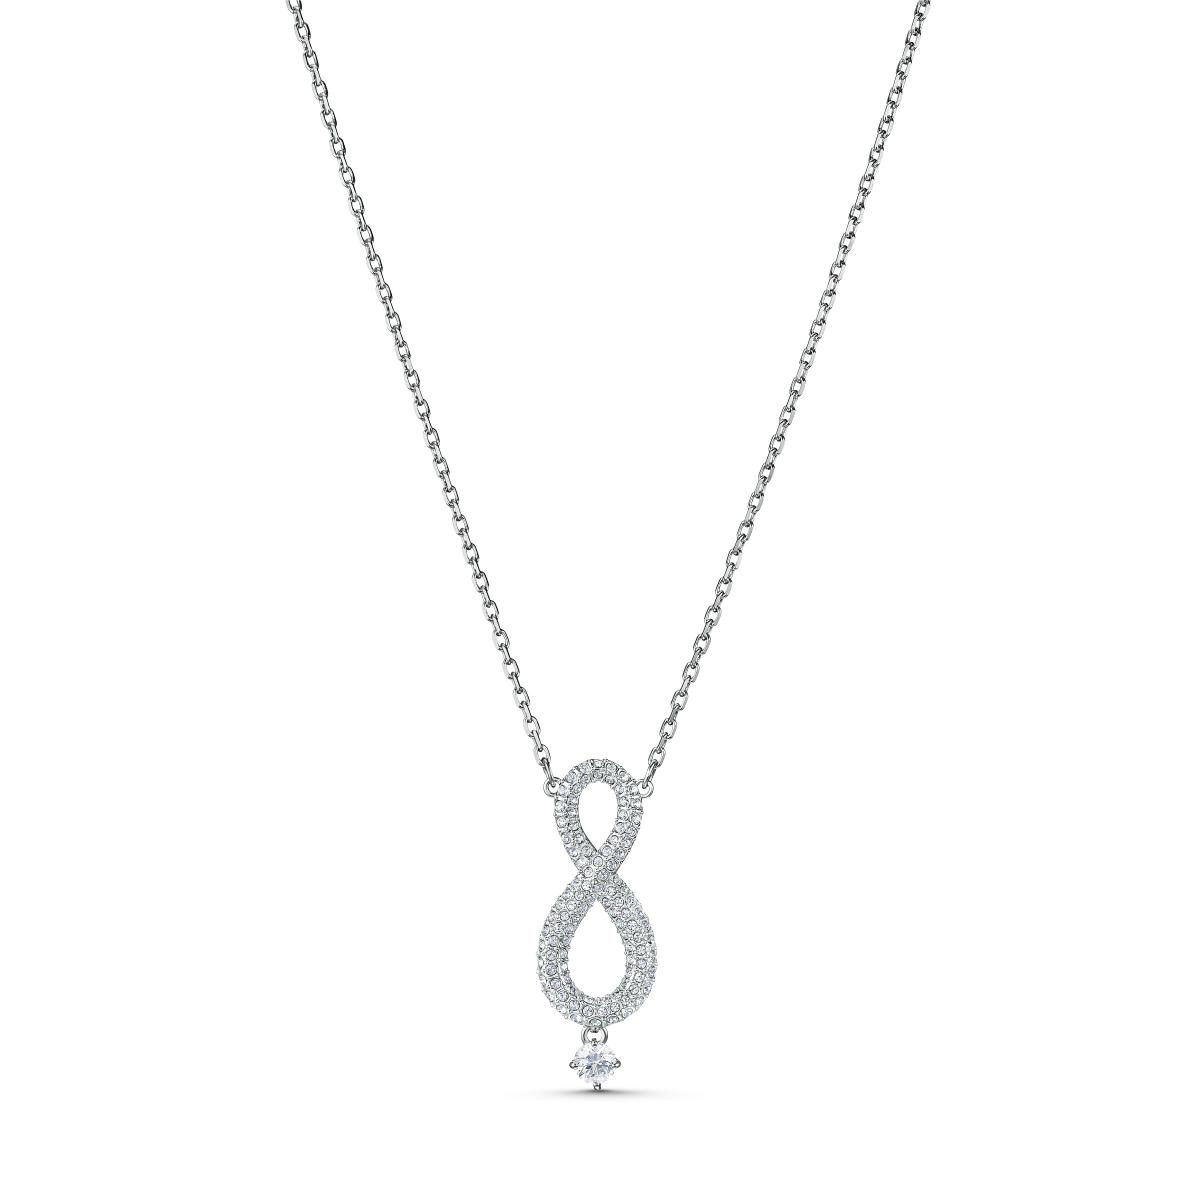 Collier Swarovski 5537966 - Collier argenté brillante pendentif infini et pierre Femme